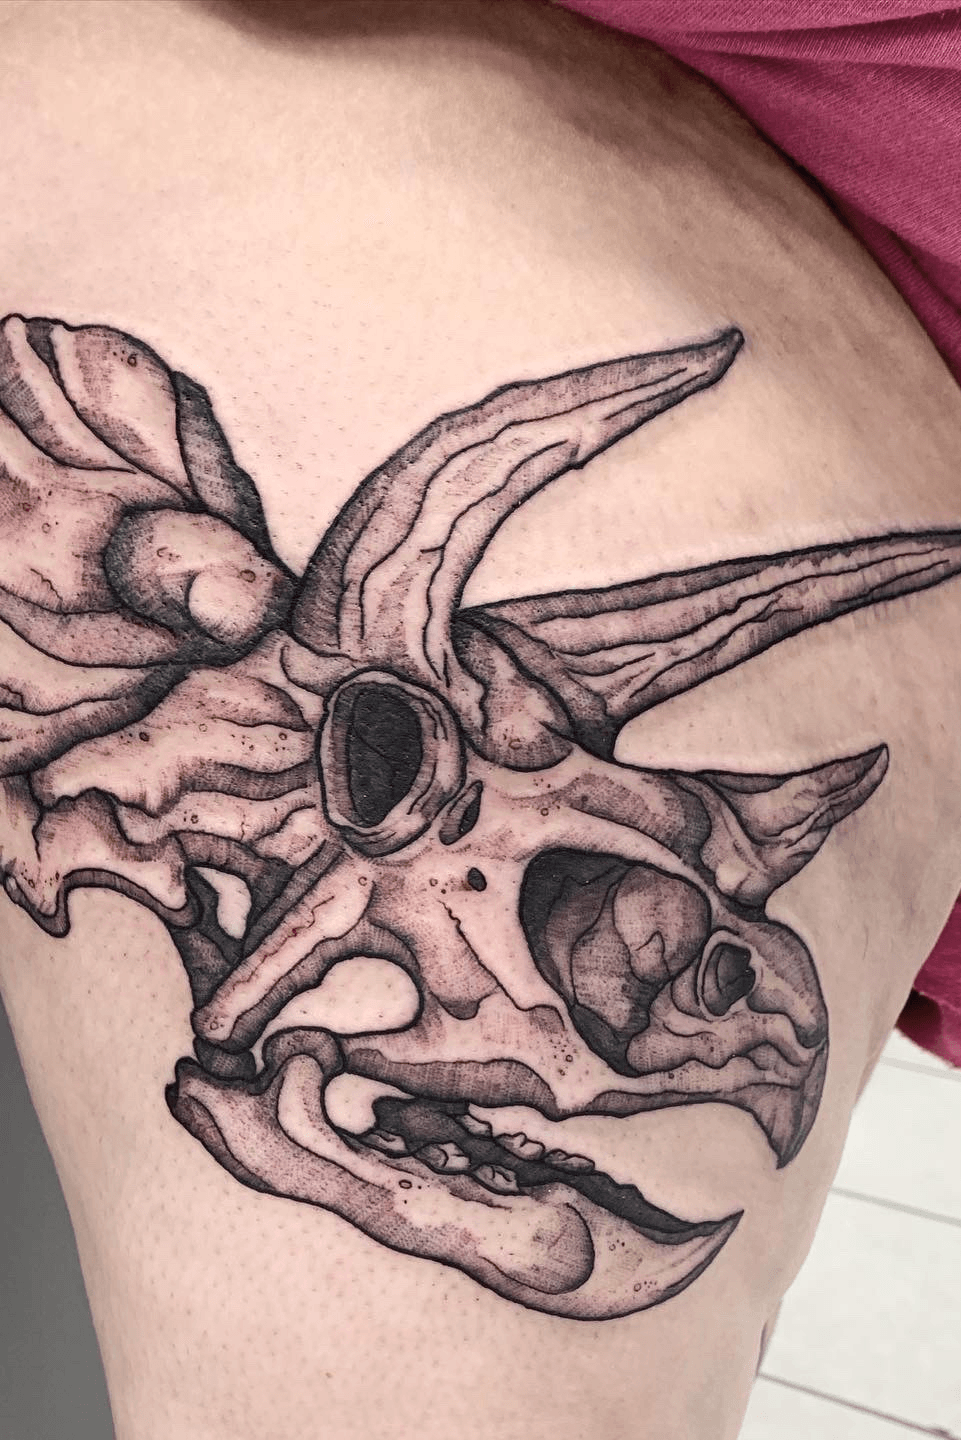 Wrigs Nevada Tattoos  Triceratops Skull Tattoo  Facebook